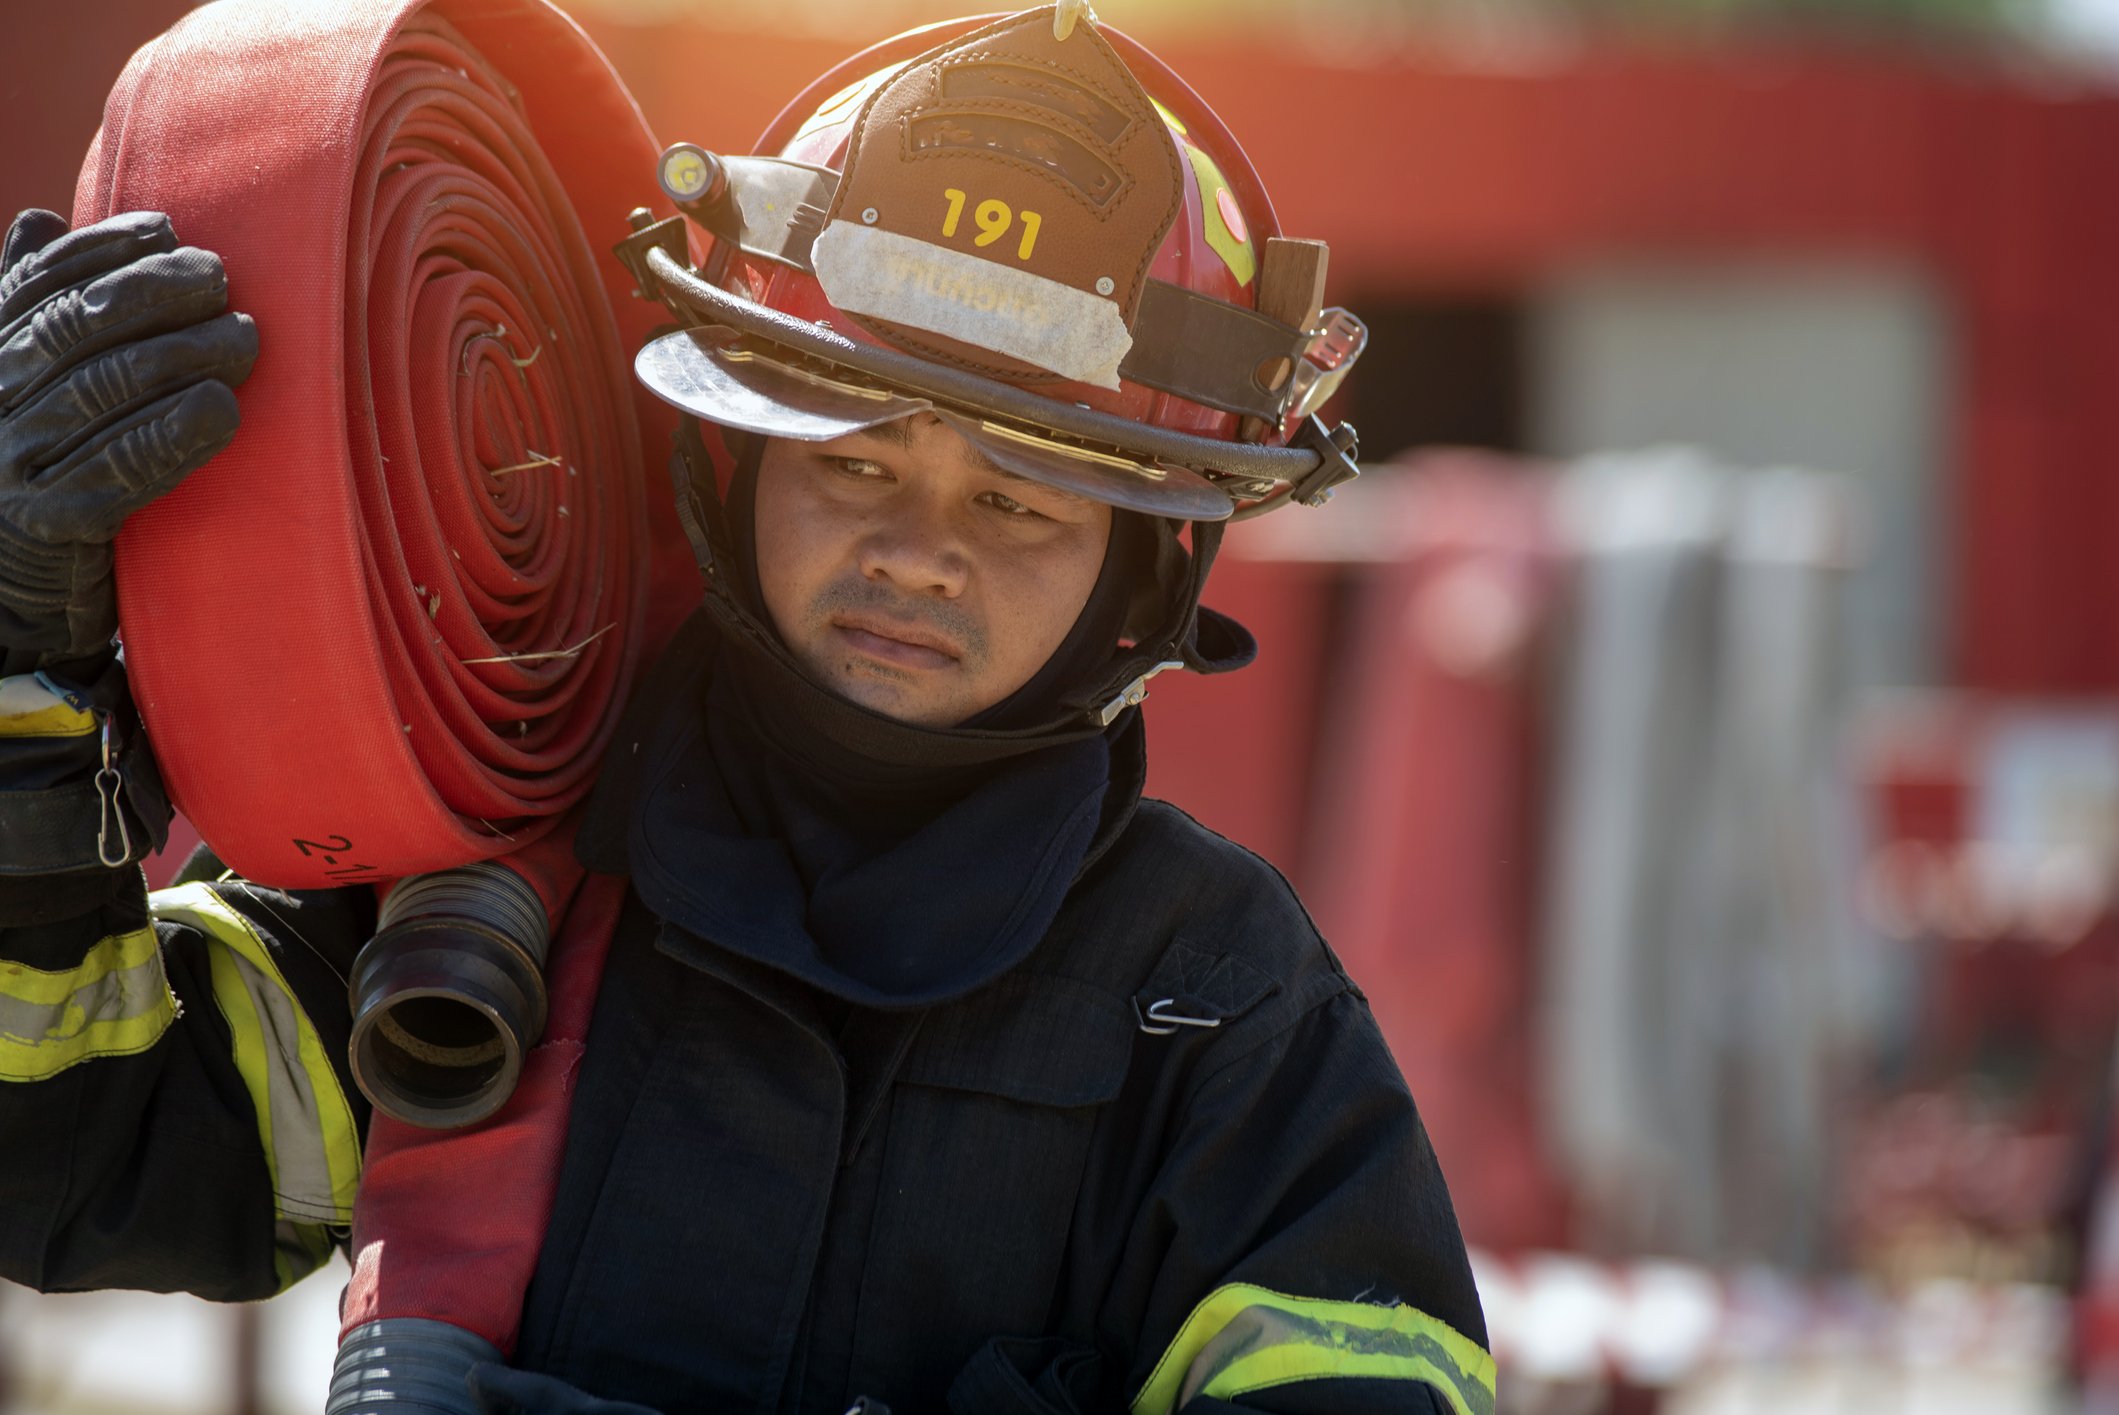 Feuerwehrmann in einem Sicherheitsanzug I Quelle: Getty Images